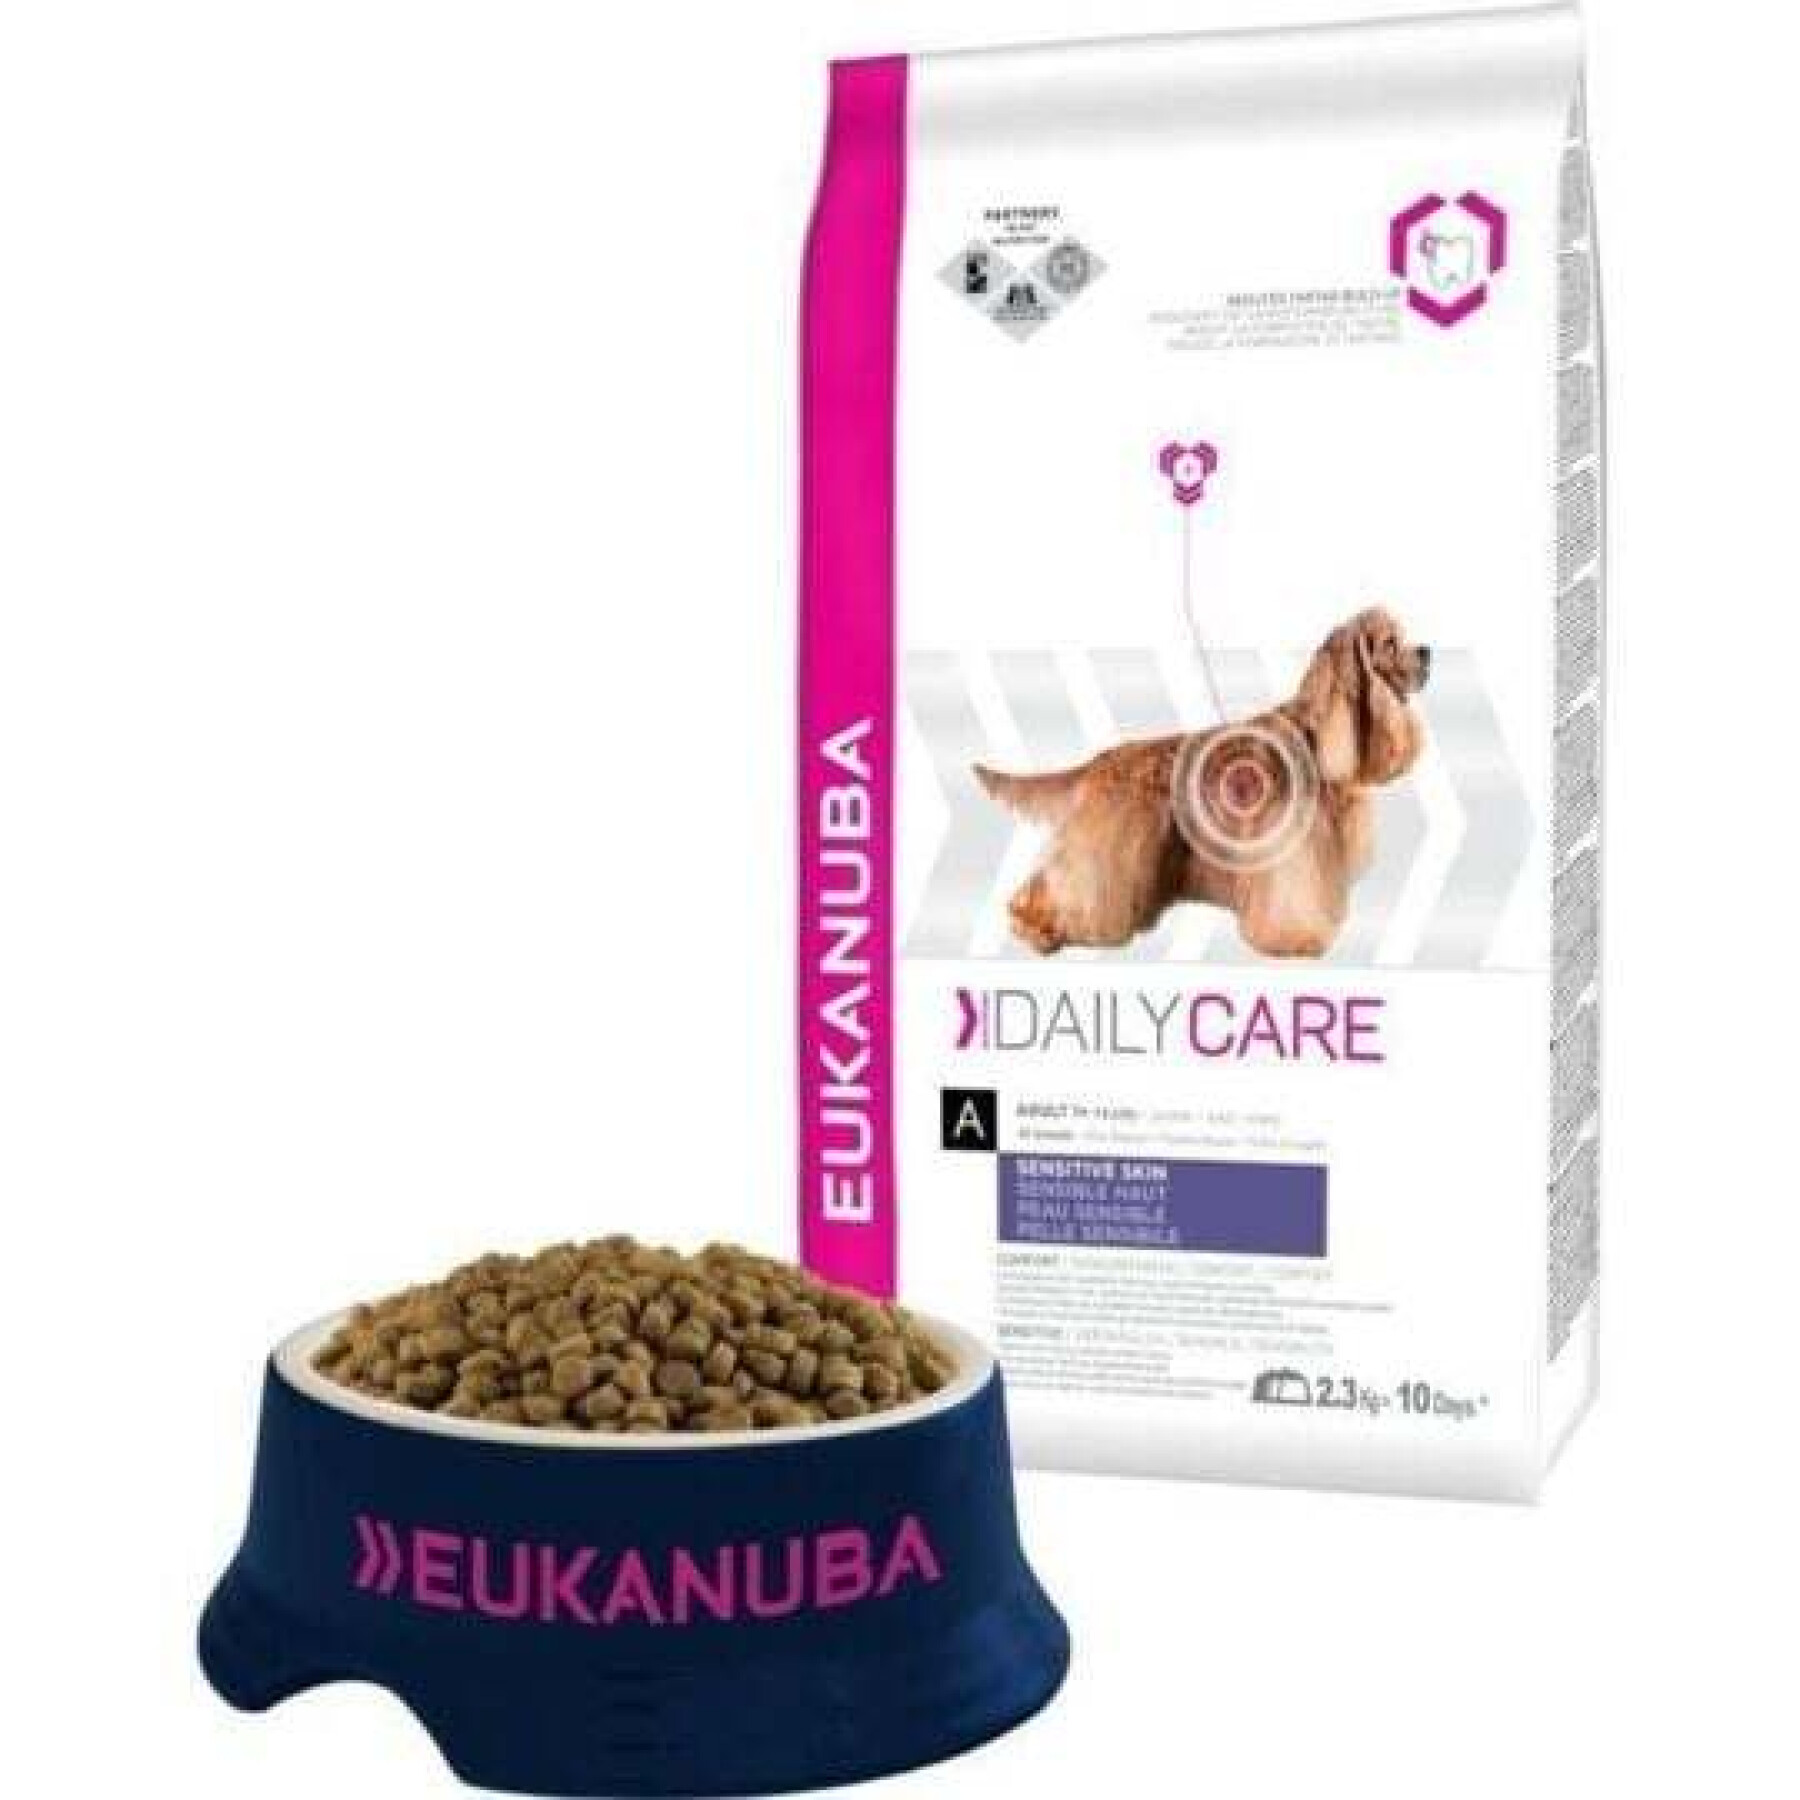 Complemento alimenticio para perros para el cuidado diario de la piel sensible Eukanuba